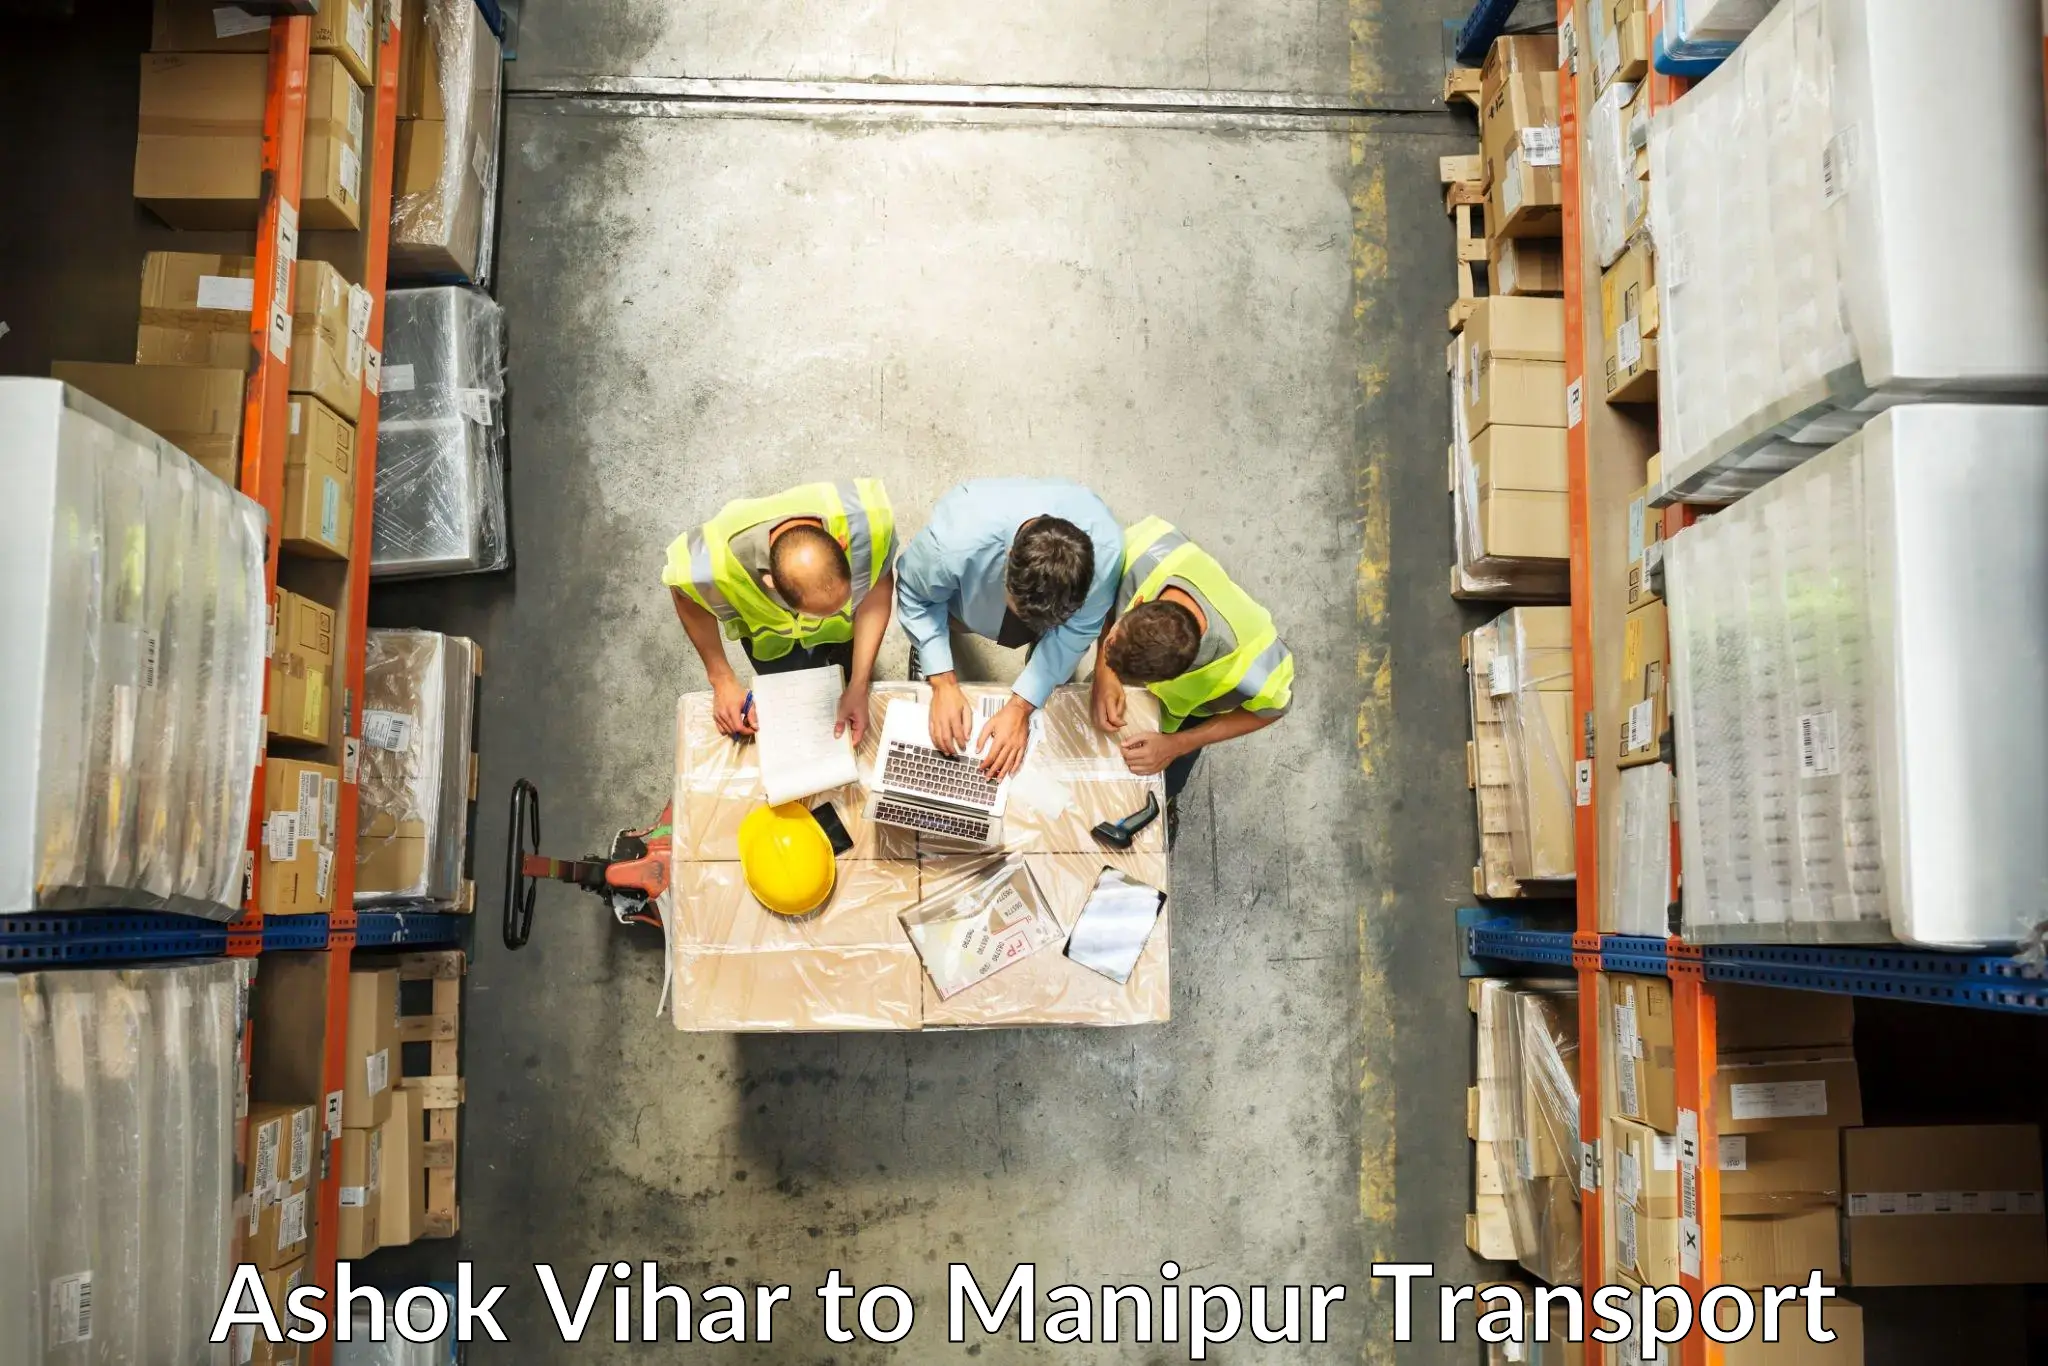 Furniture transport service Ashok Vihar to Jiribam